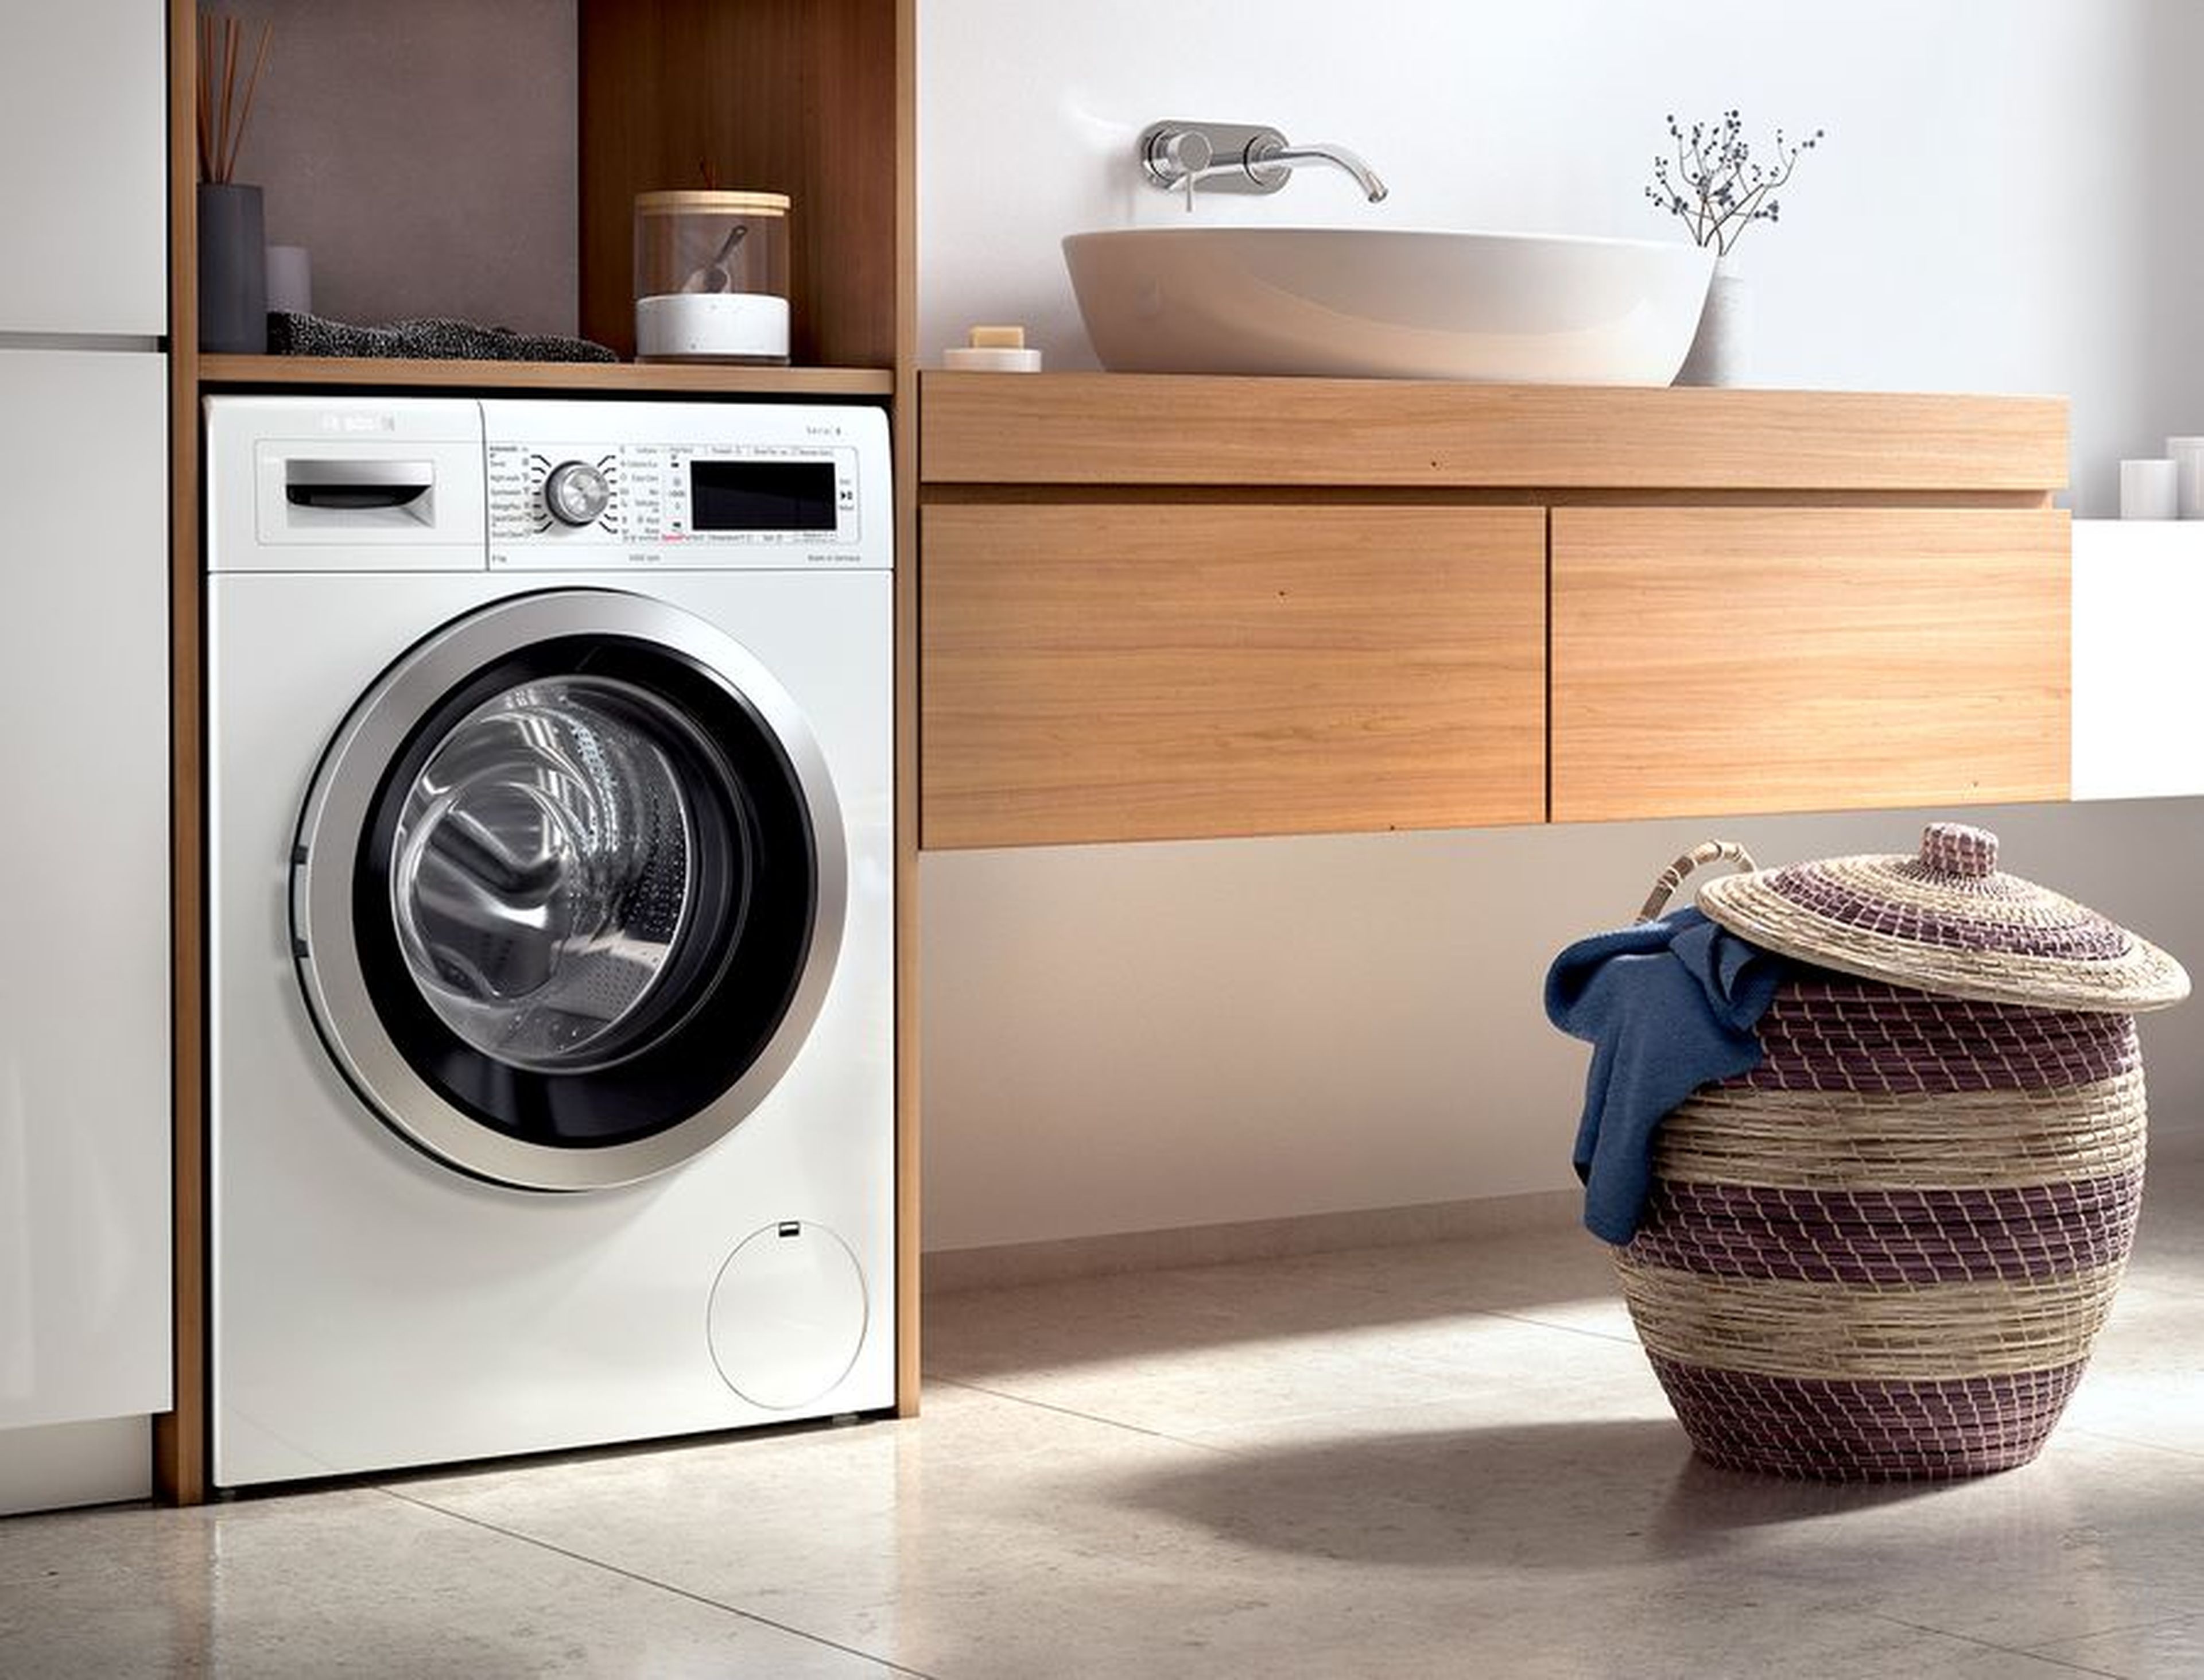 Exactitud Mendicidad Cabina Consejos para elegir y comprar una lavadora perfecta y barata | Computer Hoy